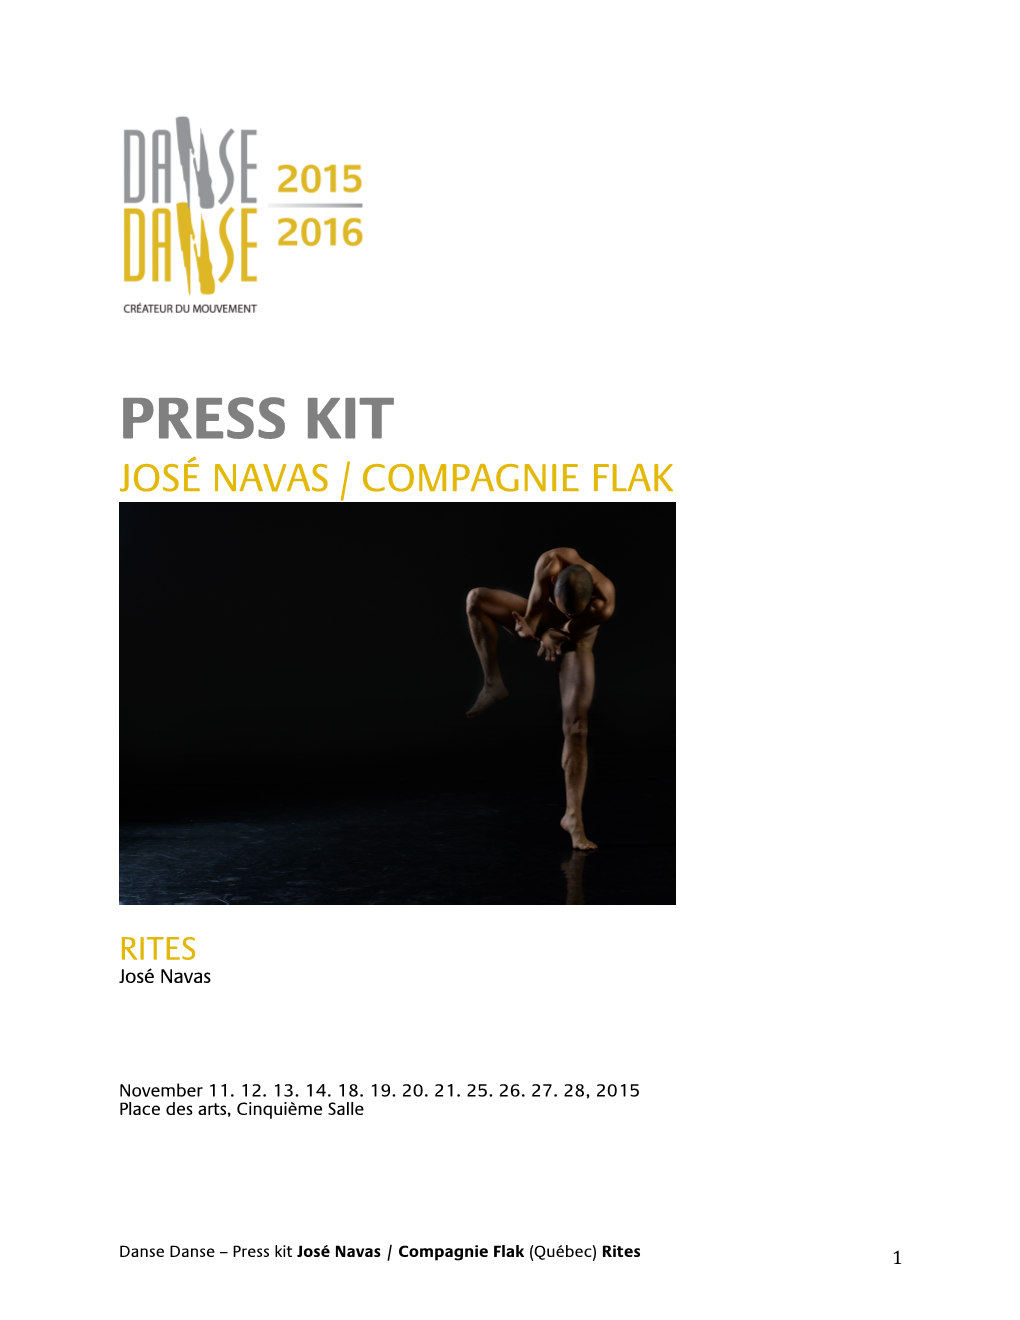 Press Kit José Navas / Compagnie Flak